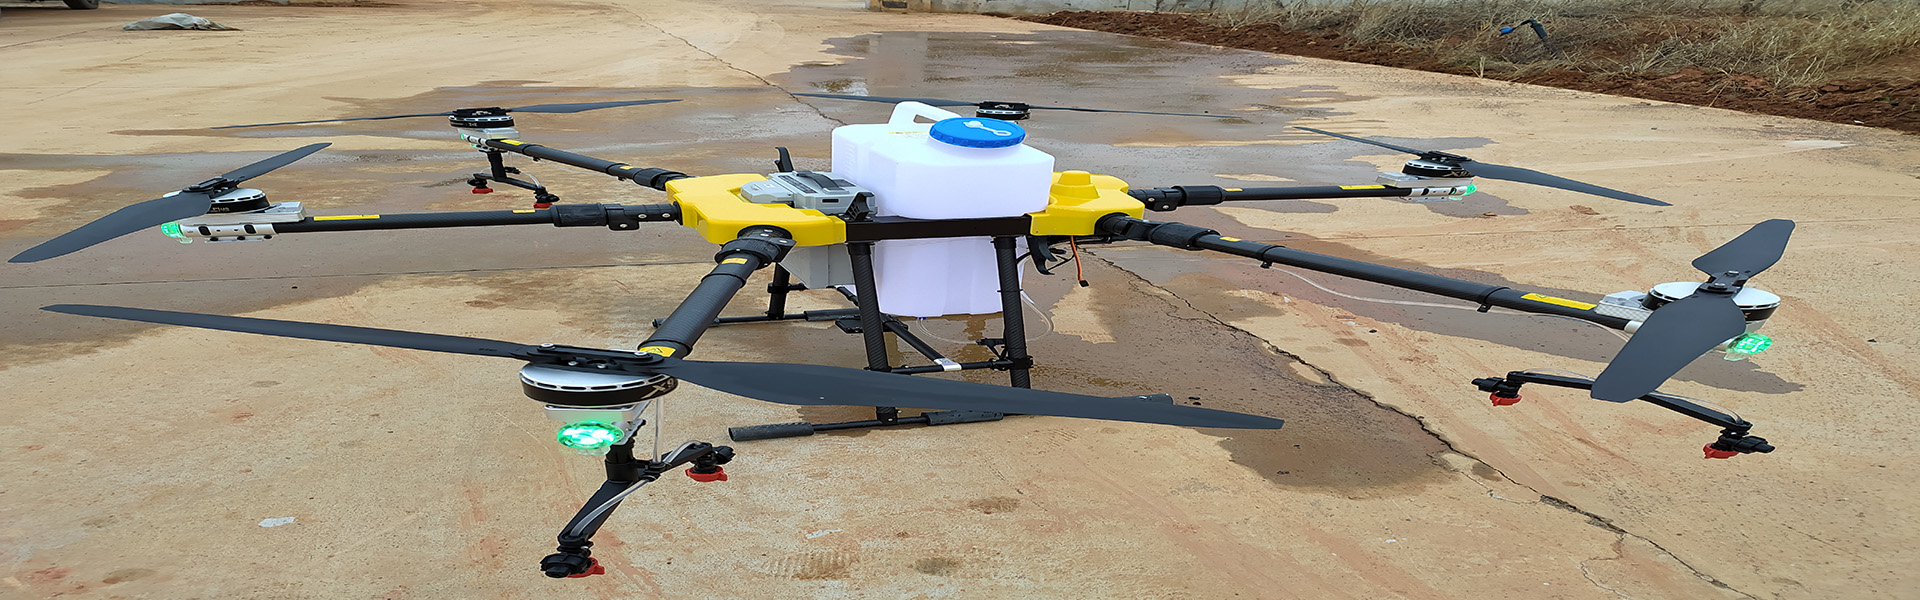 UAV agrícola, proteção de plantas UAV, acessórios Agrícolas de UAV,Shenzhen fnyuav technology co.LTD